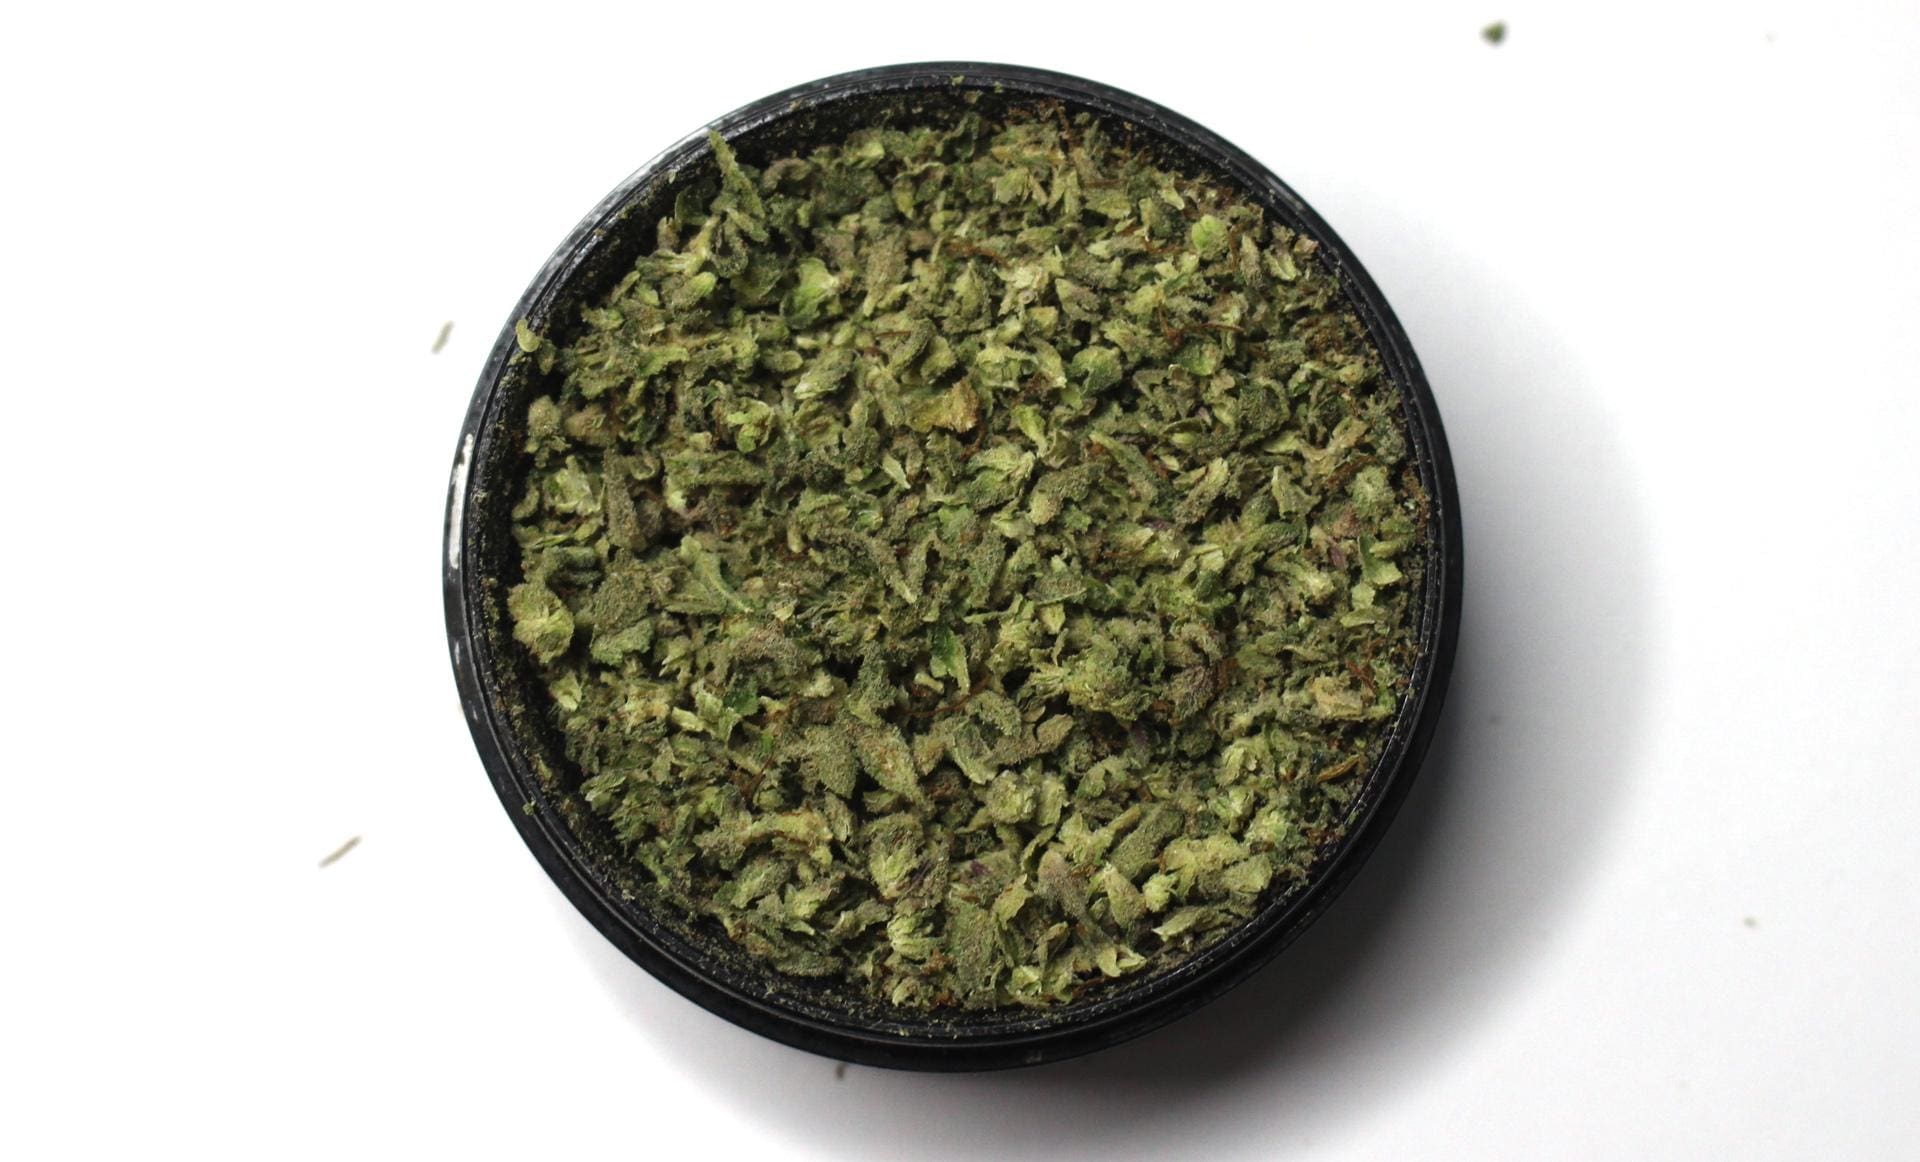 Ground cannabis